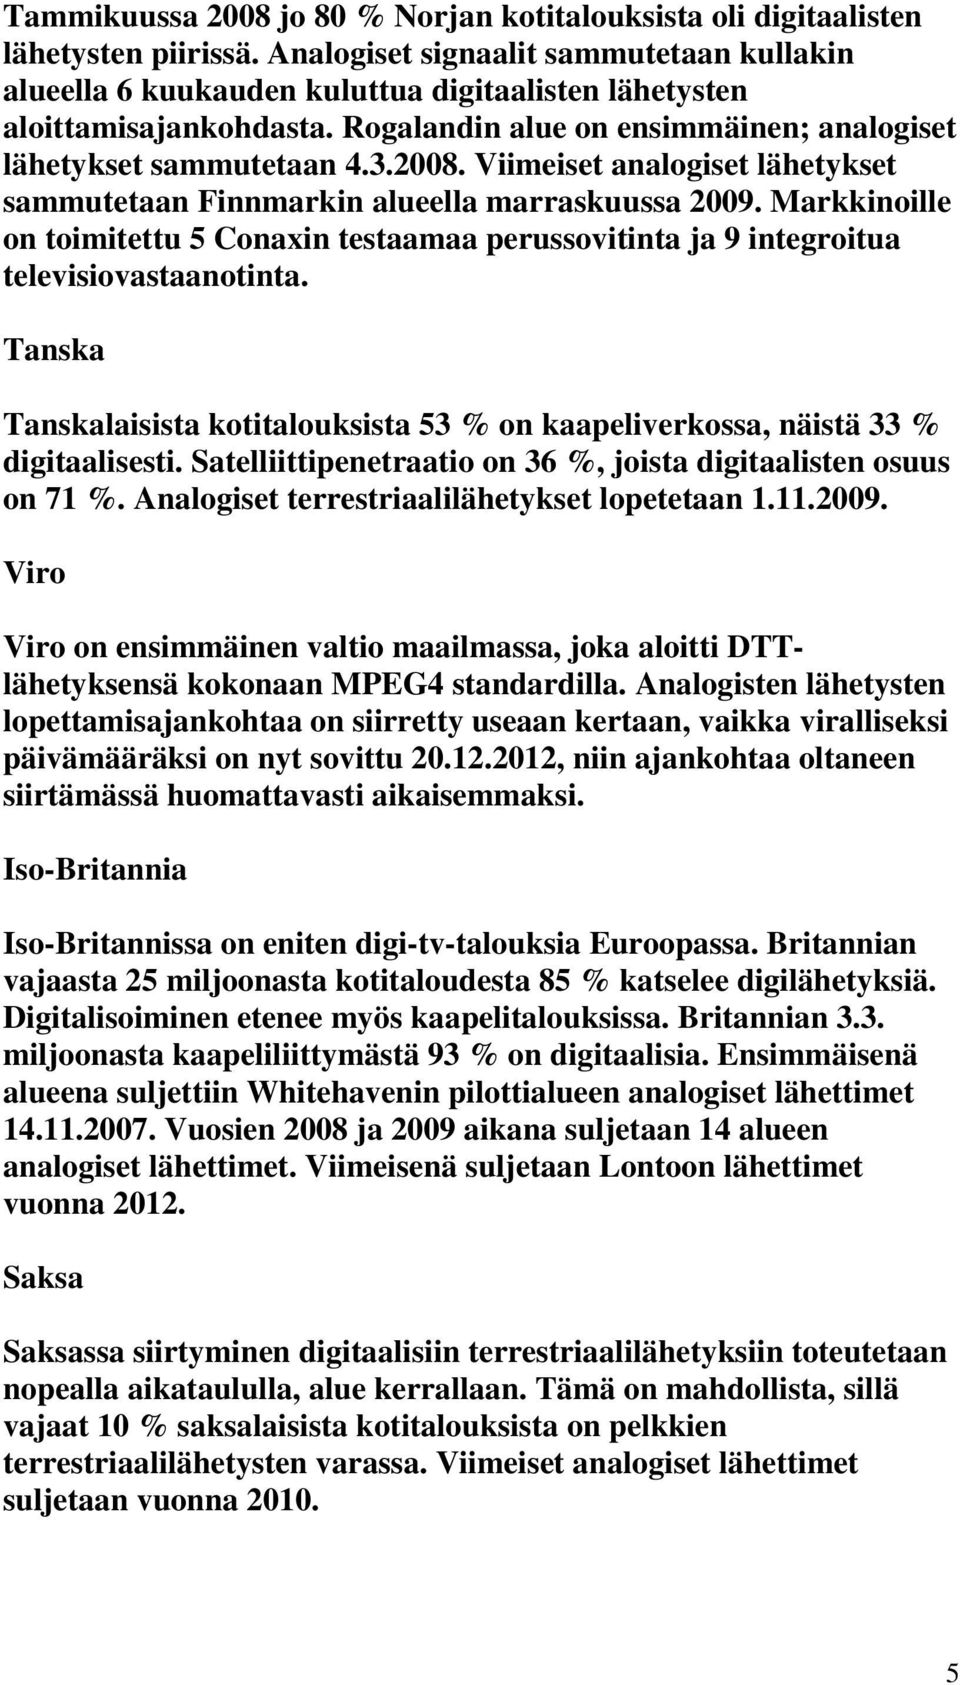 Viimeiset analogiset lähetykset sammutetaan Finnmarkin alueella marraskuussa 2009. Markkinoille on toimitettu 5 Conaxin testaamaa perussovitinta ja 9 integroitua televisiovastaanotinta.